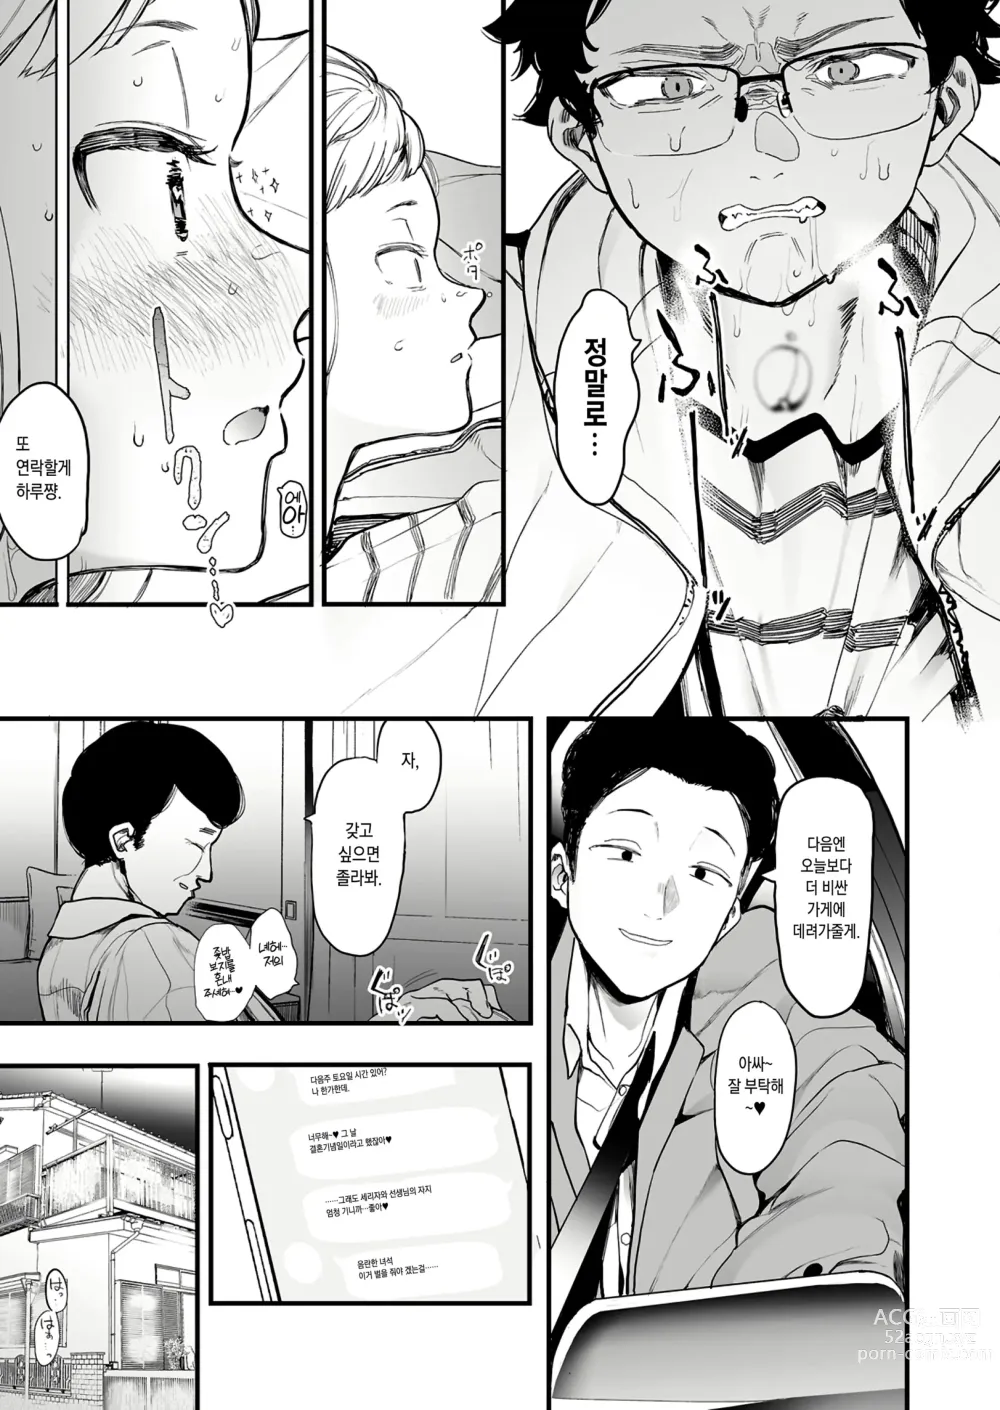 Page 14 of manga 에이트맨 선생님 덕분에 여친이 생겼습니다!